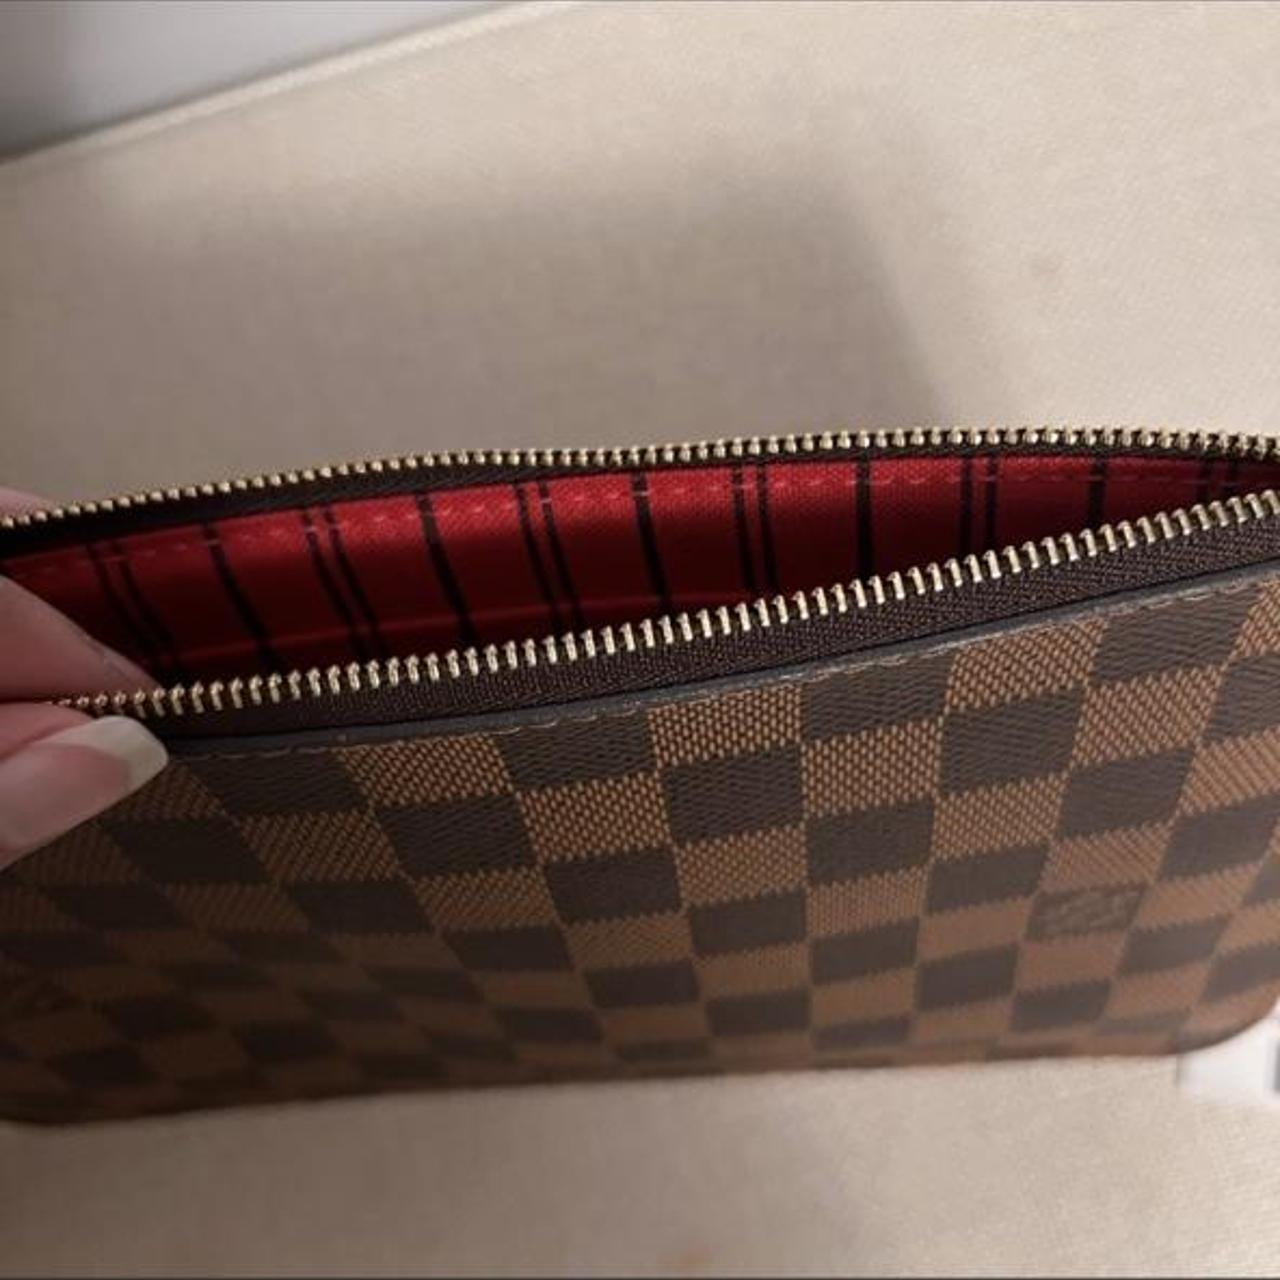 Louis Vuitton purchase swag. LV authentic envelope, - Depop